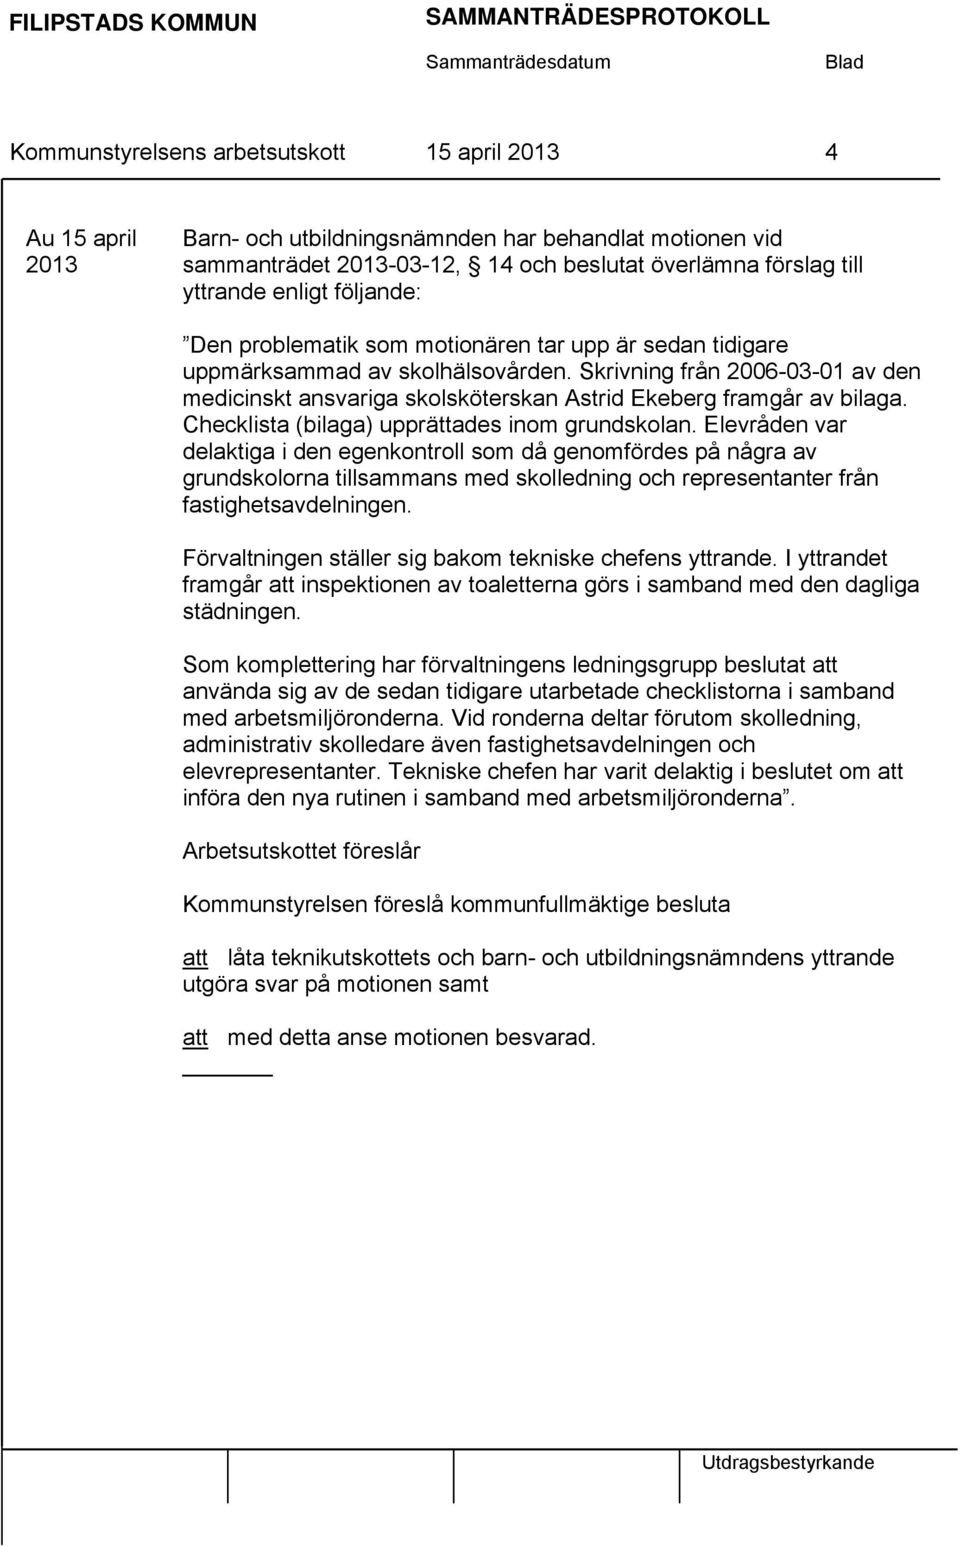 Skrivning från 2006-03-01 av den medicinskt ansvariga skolsköterskan Astrid Ekeberg framgår av bilaga. Checklista (bilaga) upprättades inom grundskolan.